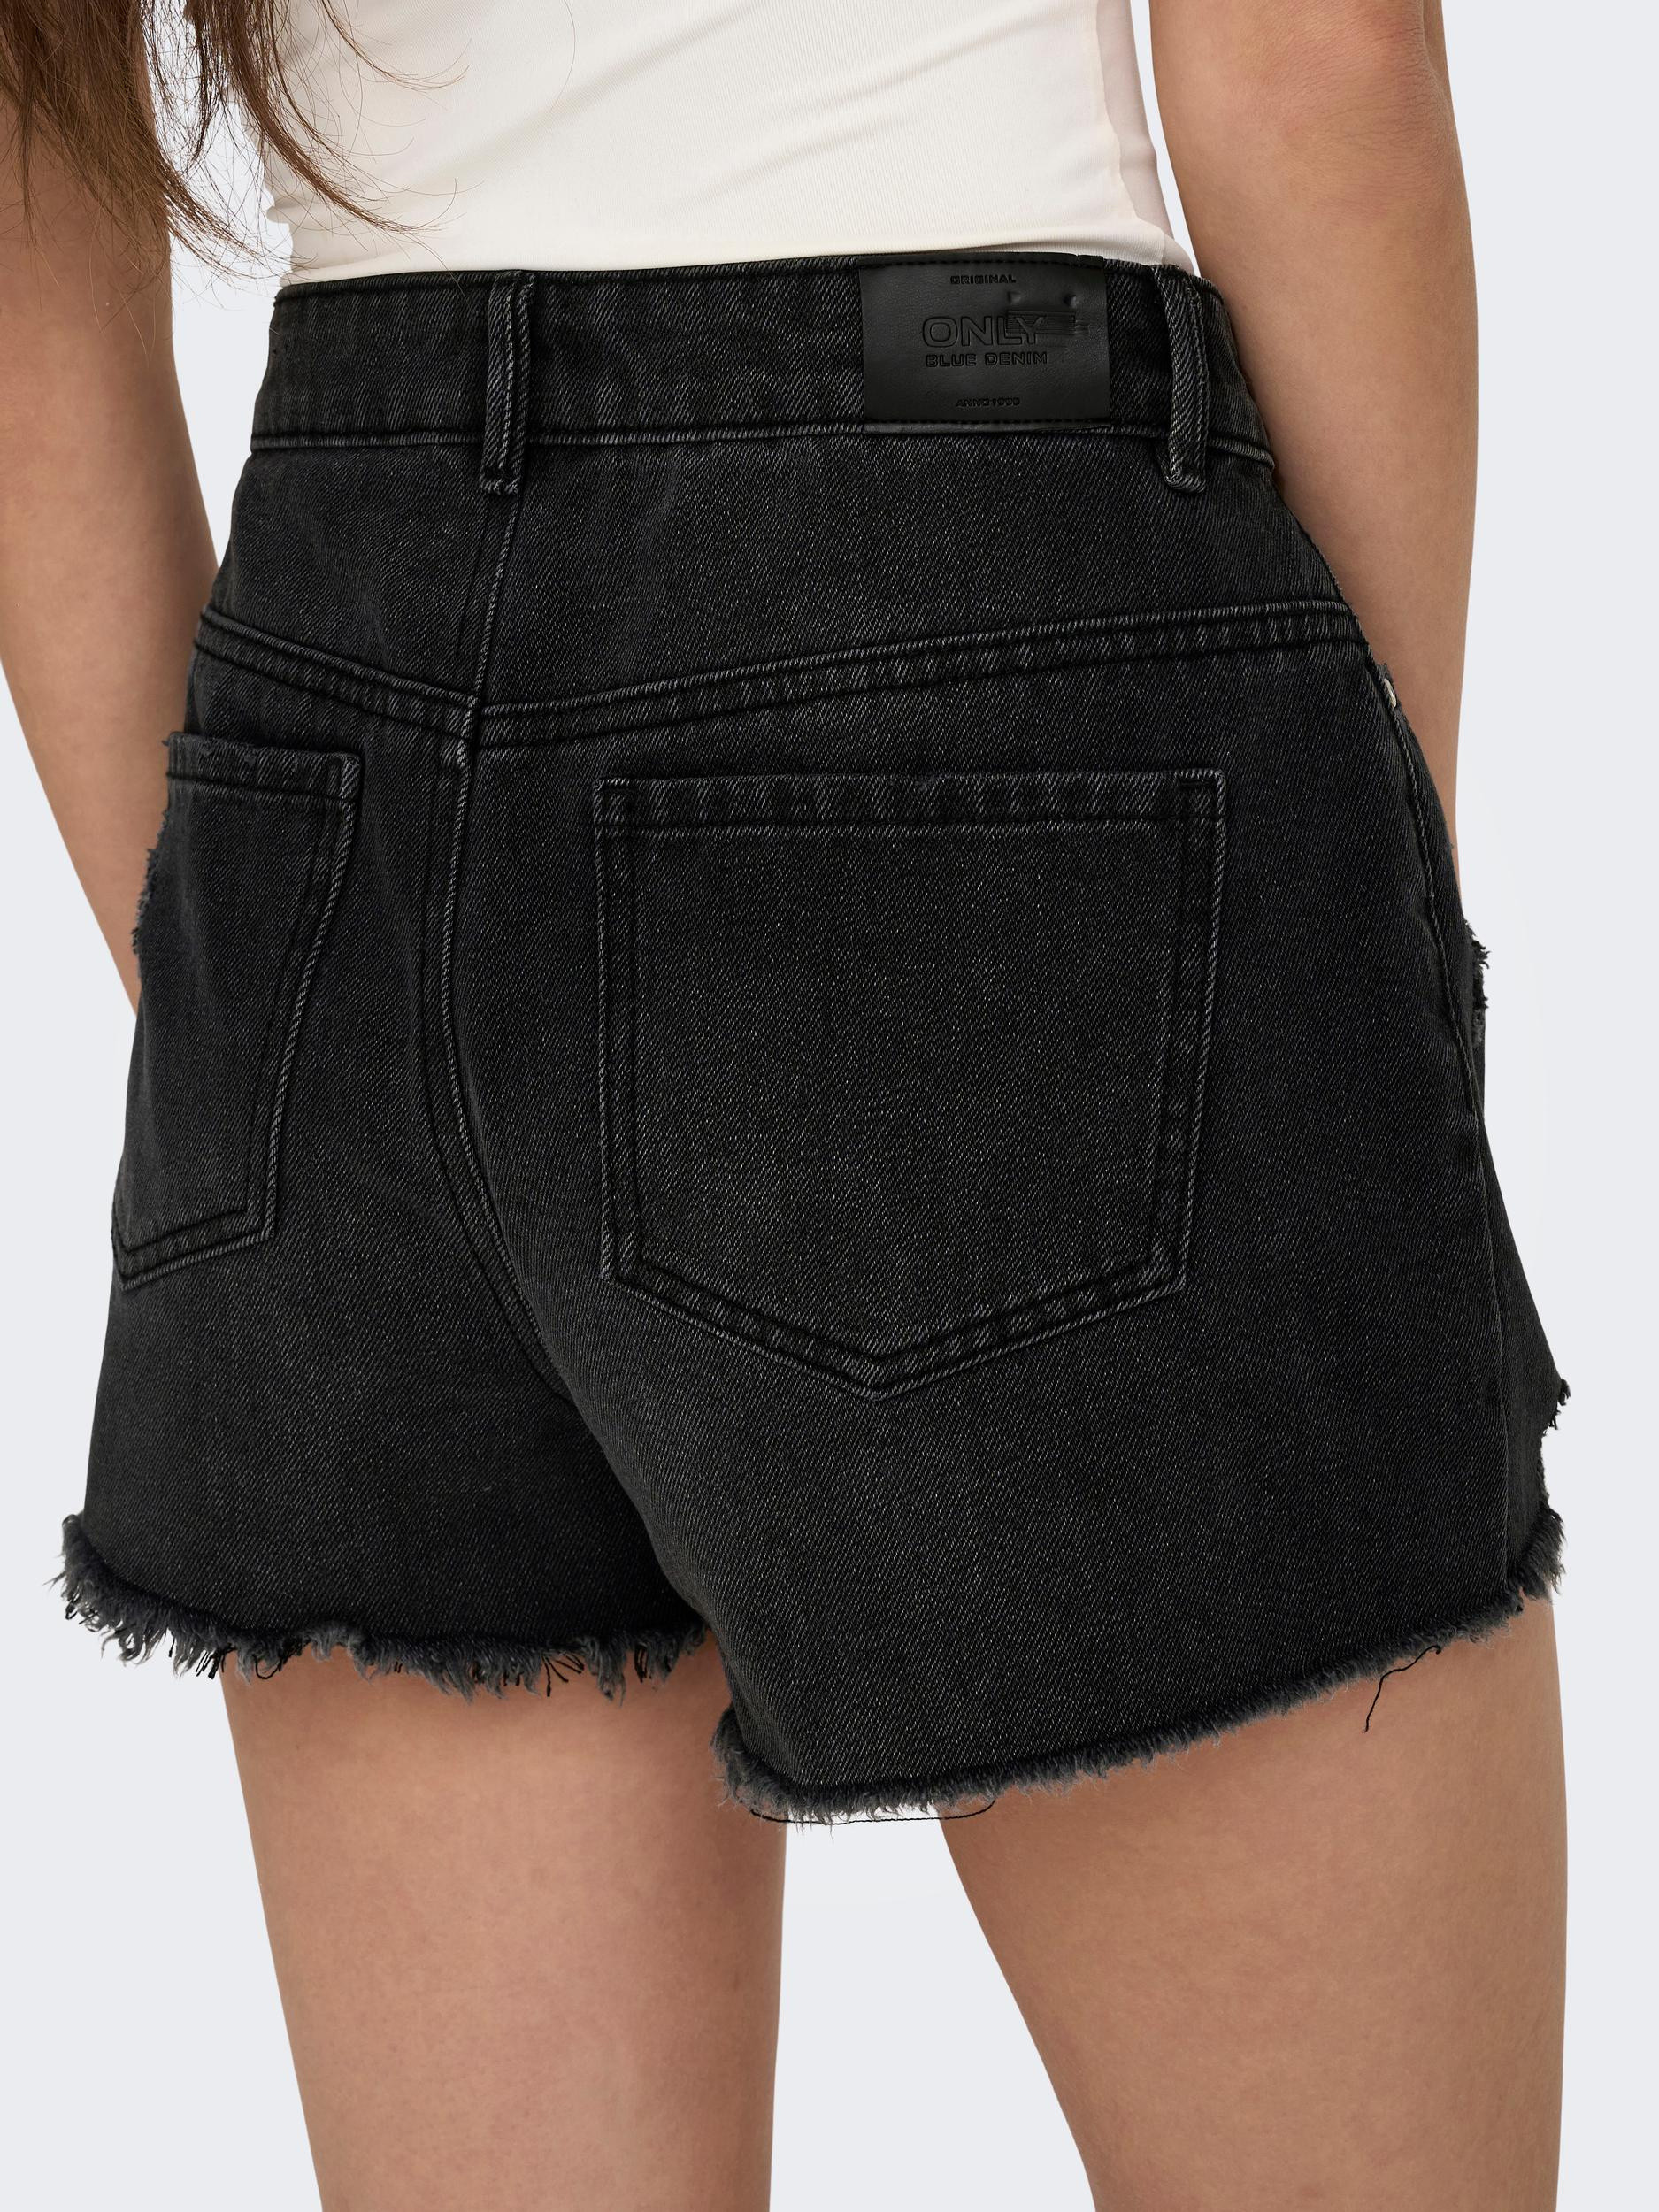 Only - Regular fit five-pocket shorts, Black, large image number 3